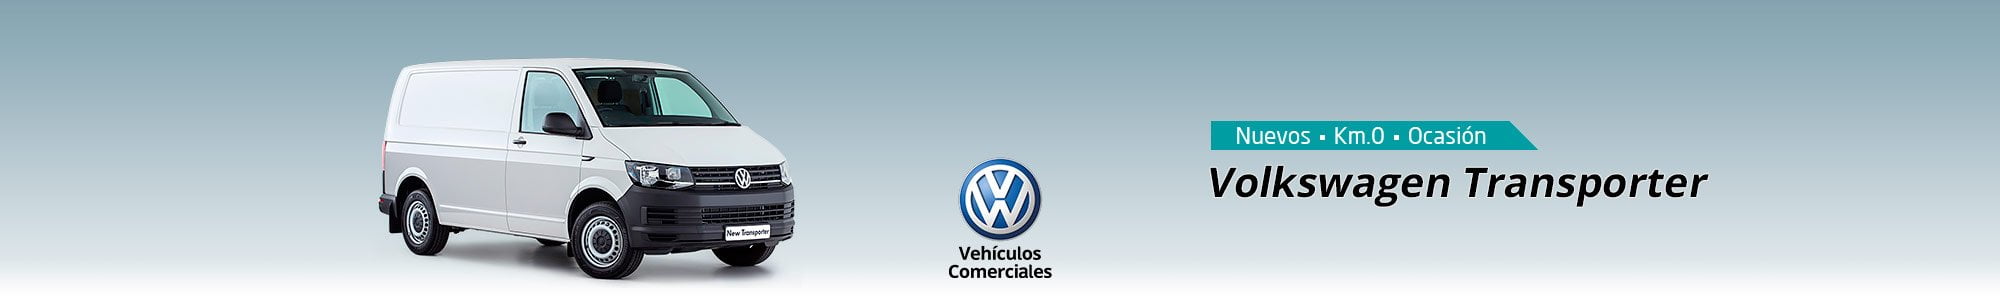 Volkswagen Transporter T5 114 CV 2.0 TDI 8 plazas 2014 • Comatrasa